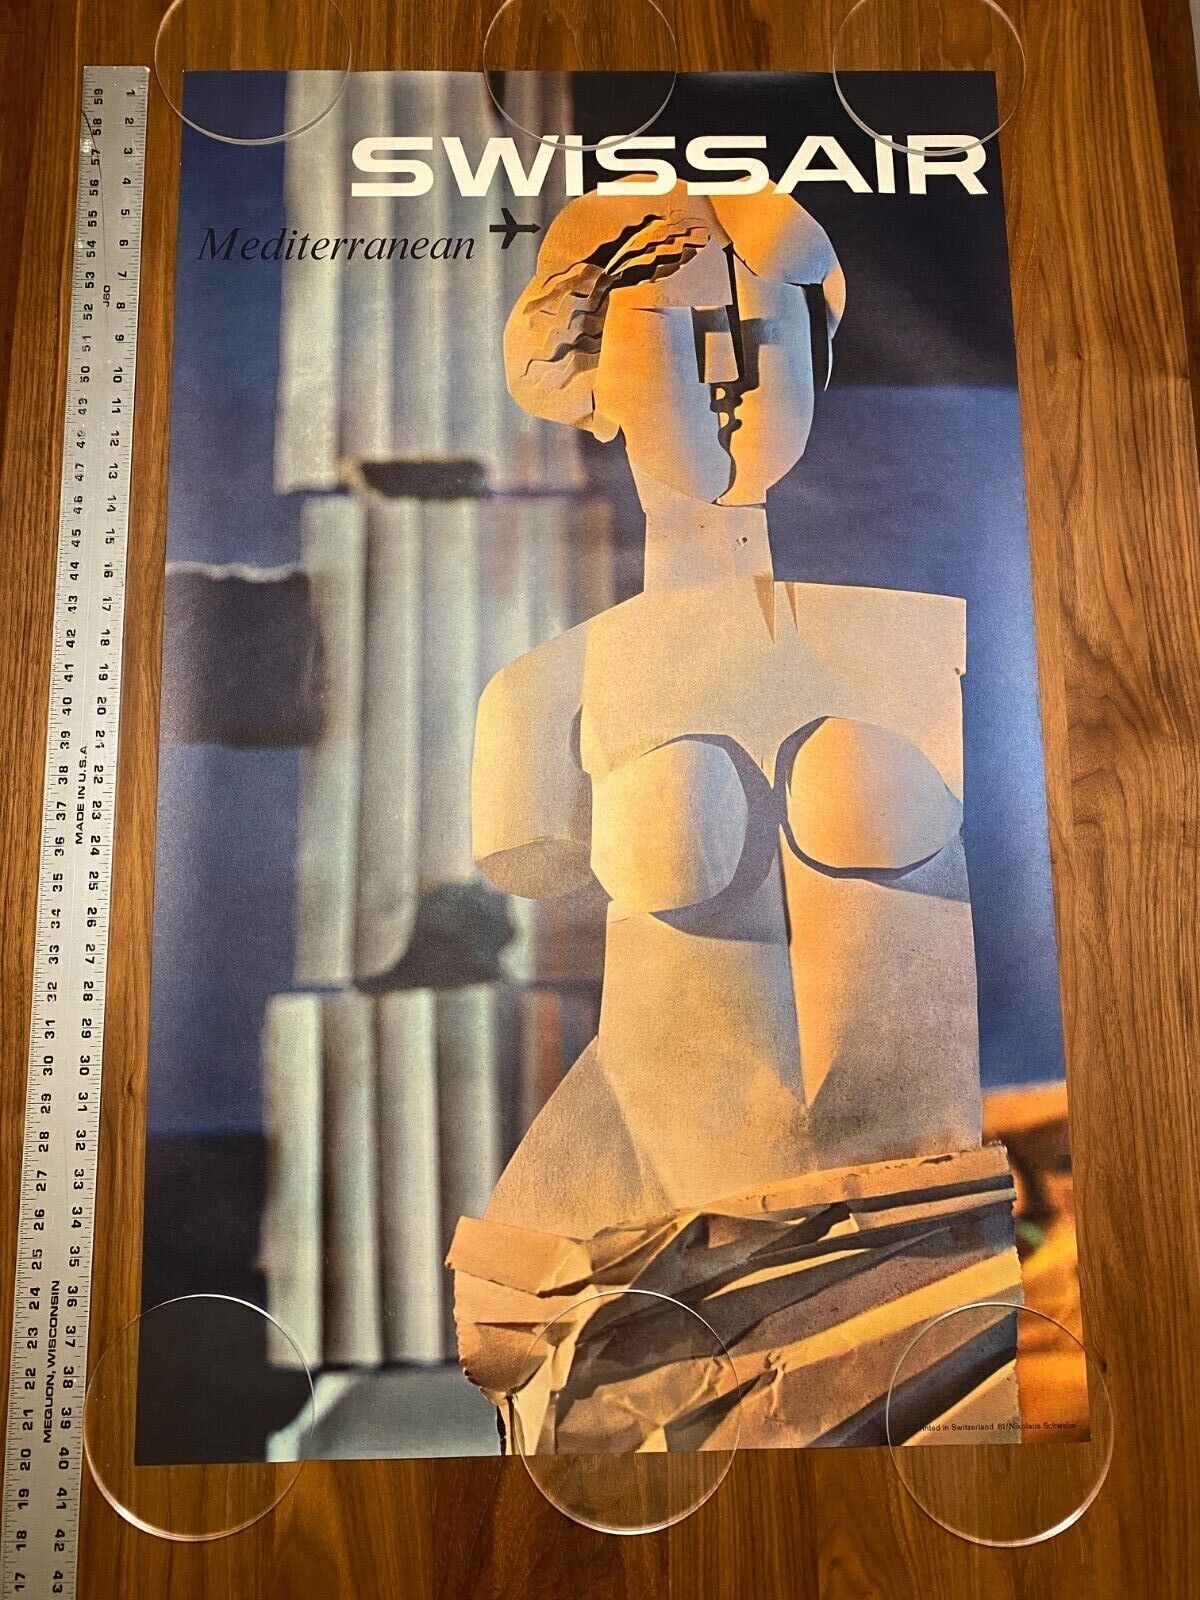 SWISSAIR Airlines Mediterranean Vintage 1961 Travel Poster Nikolaus Schwabe